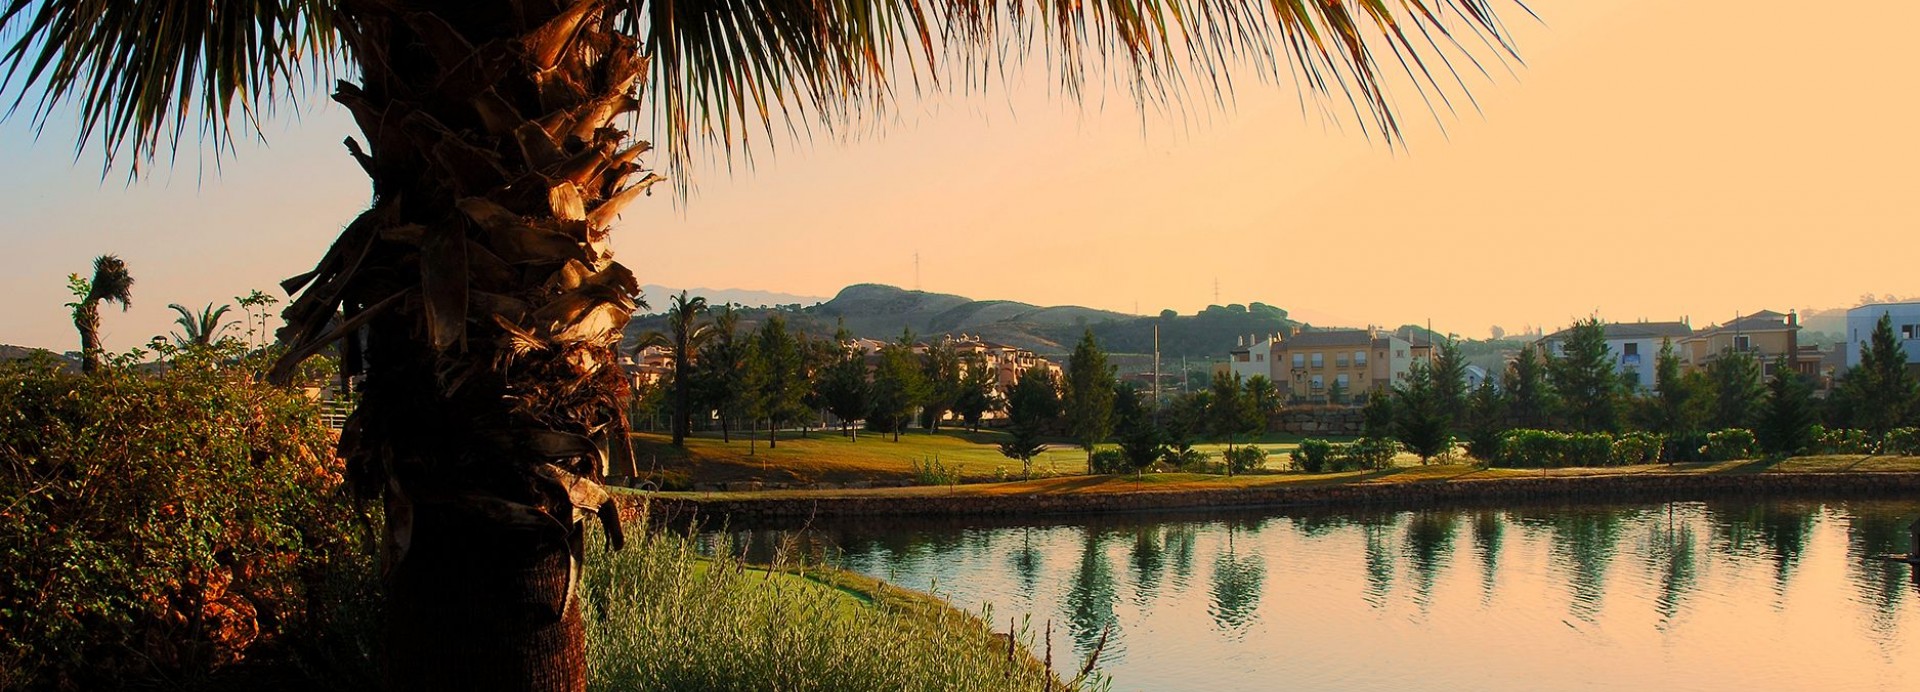 La Noria Golf & Resort  | Golfové zájezdy, golfová dovolená, luxusní golf